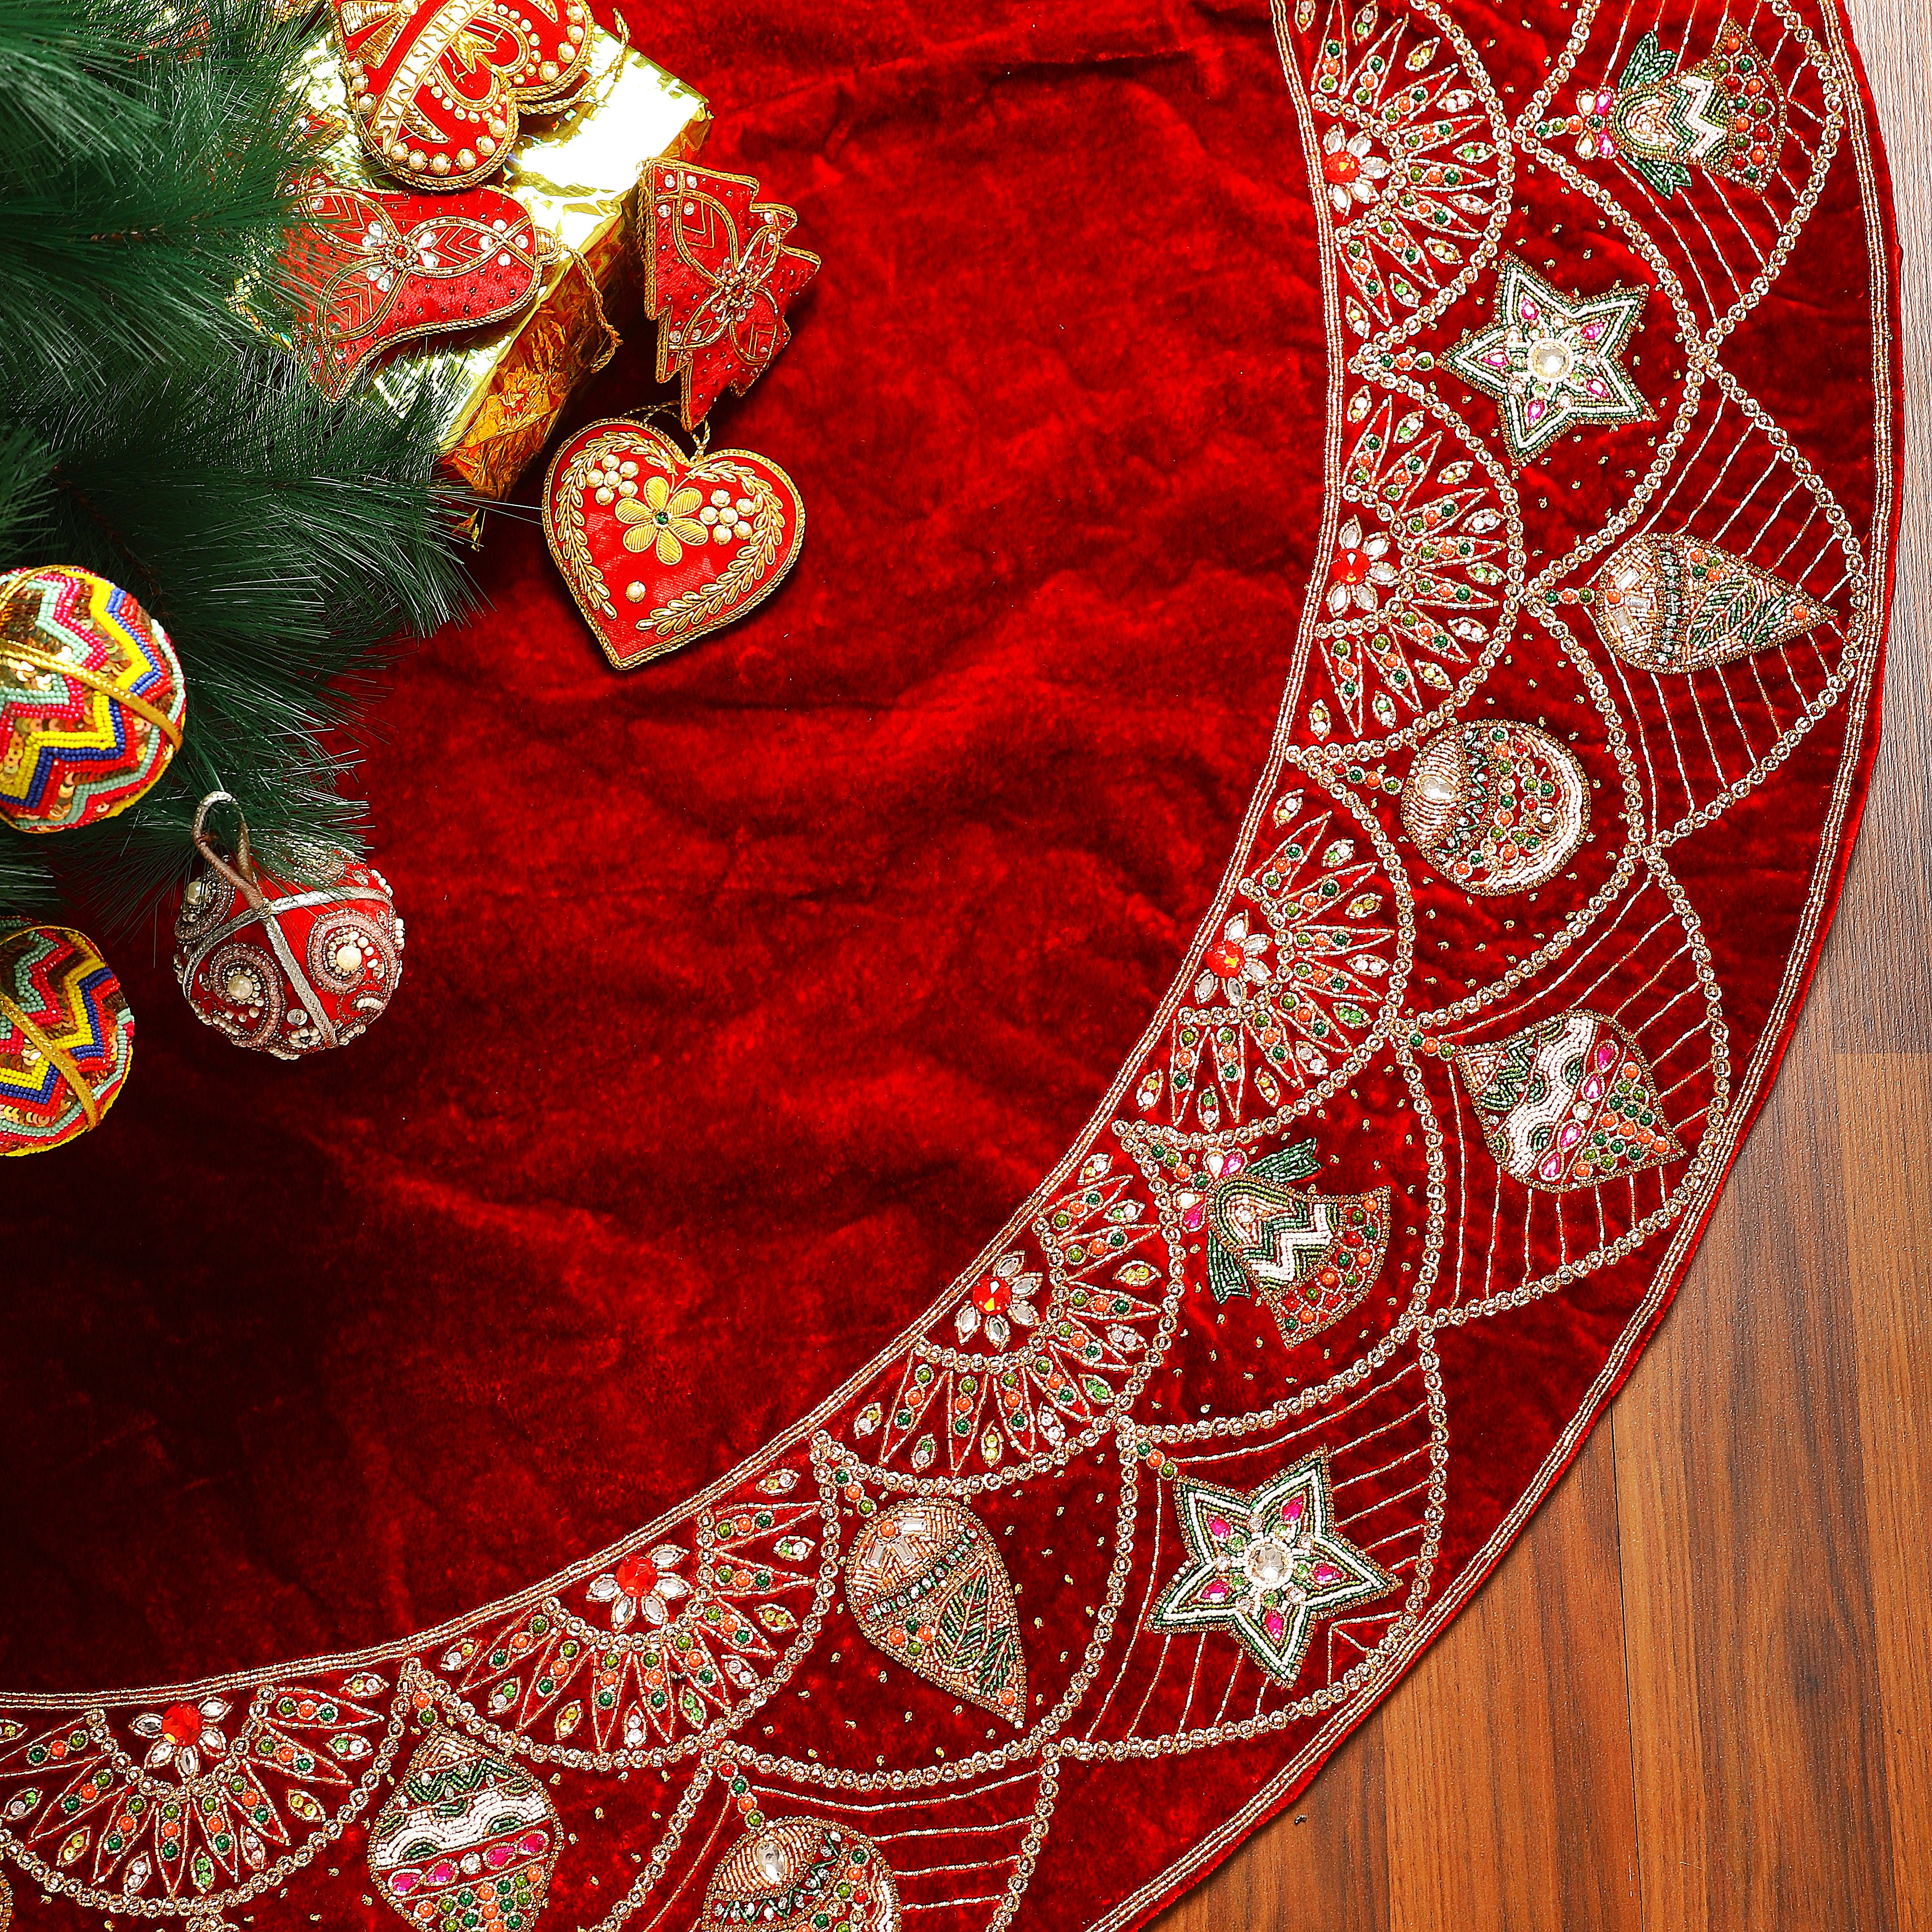 Ornament Charm Red Velvet Christmas Tree Skirt & Matching Christmas Stocking Set